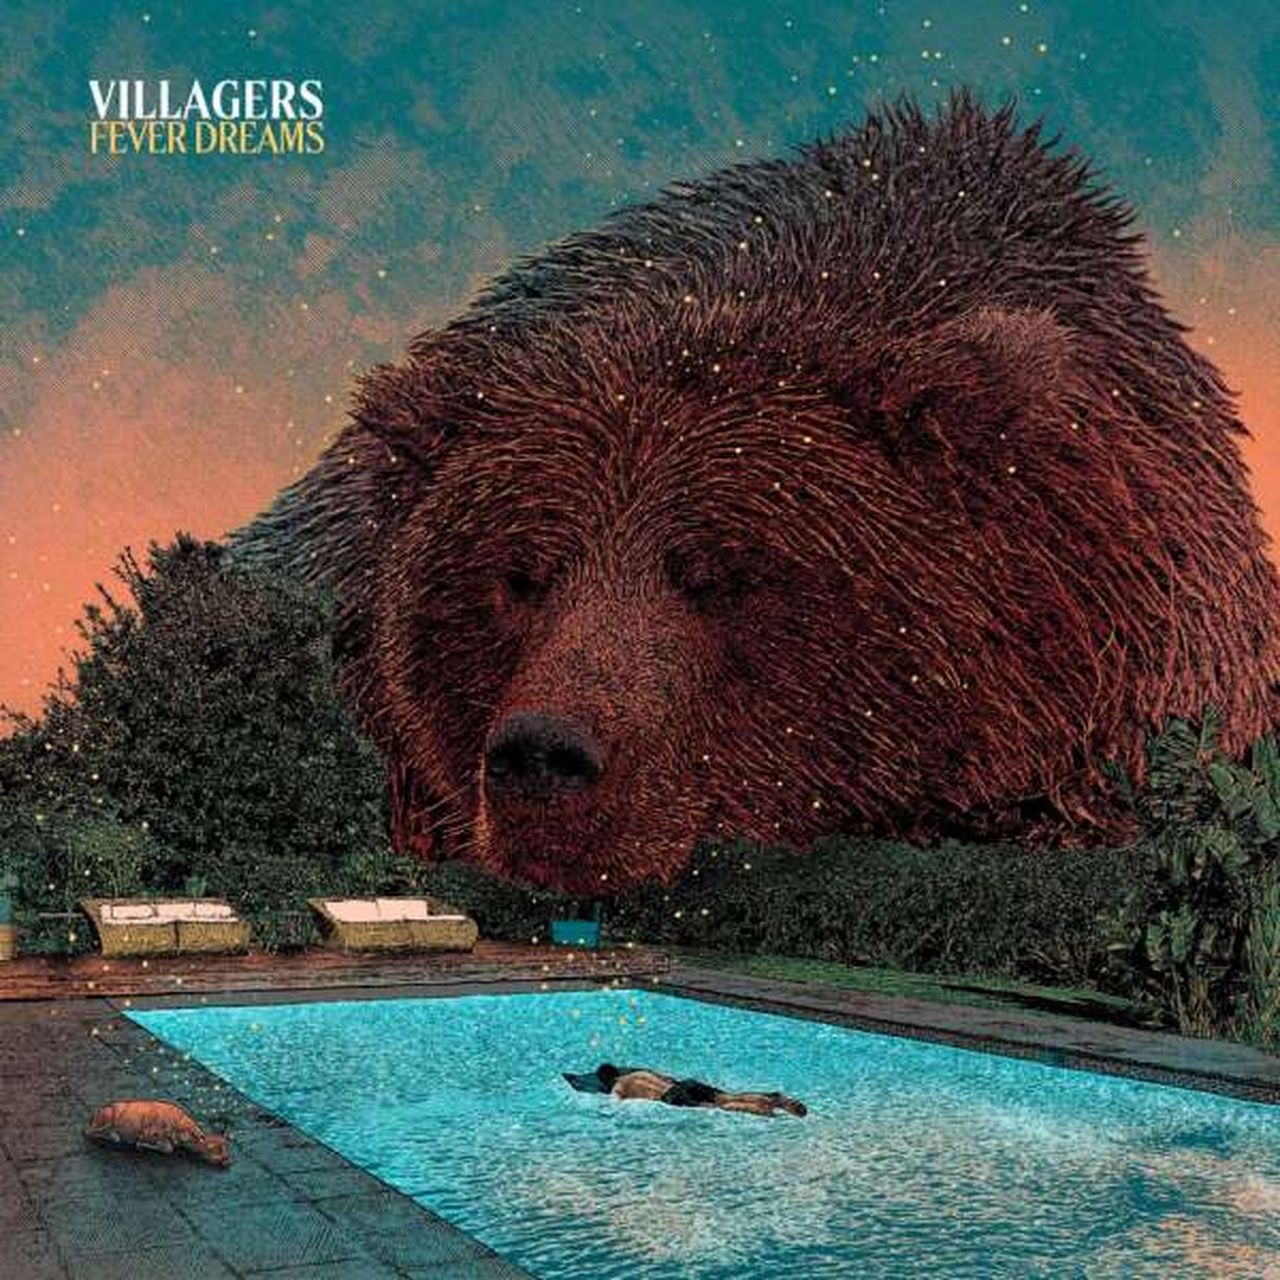 Villagers und sein neues Album "Fever Dreams"